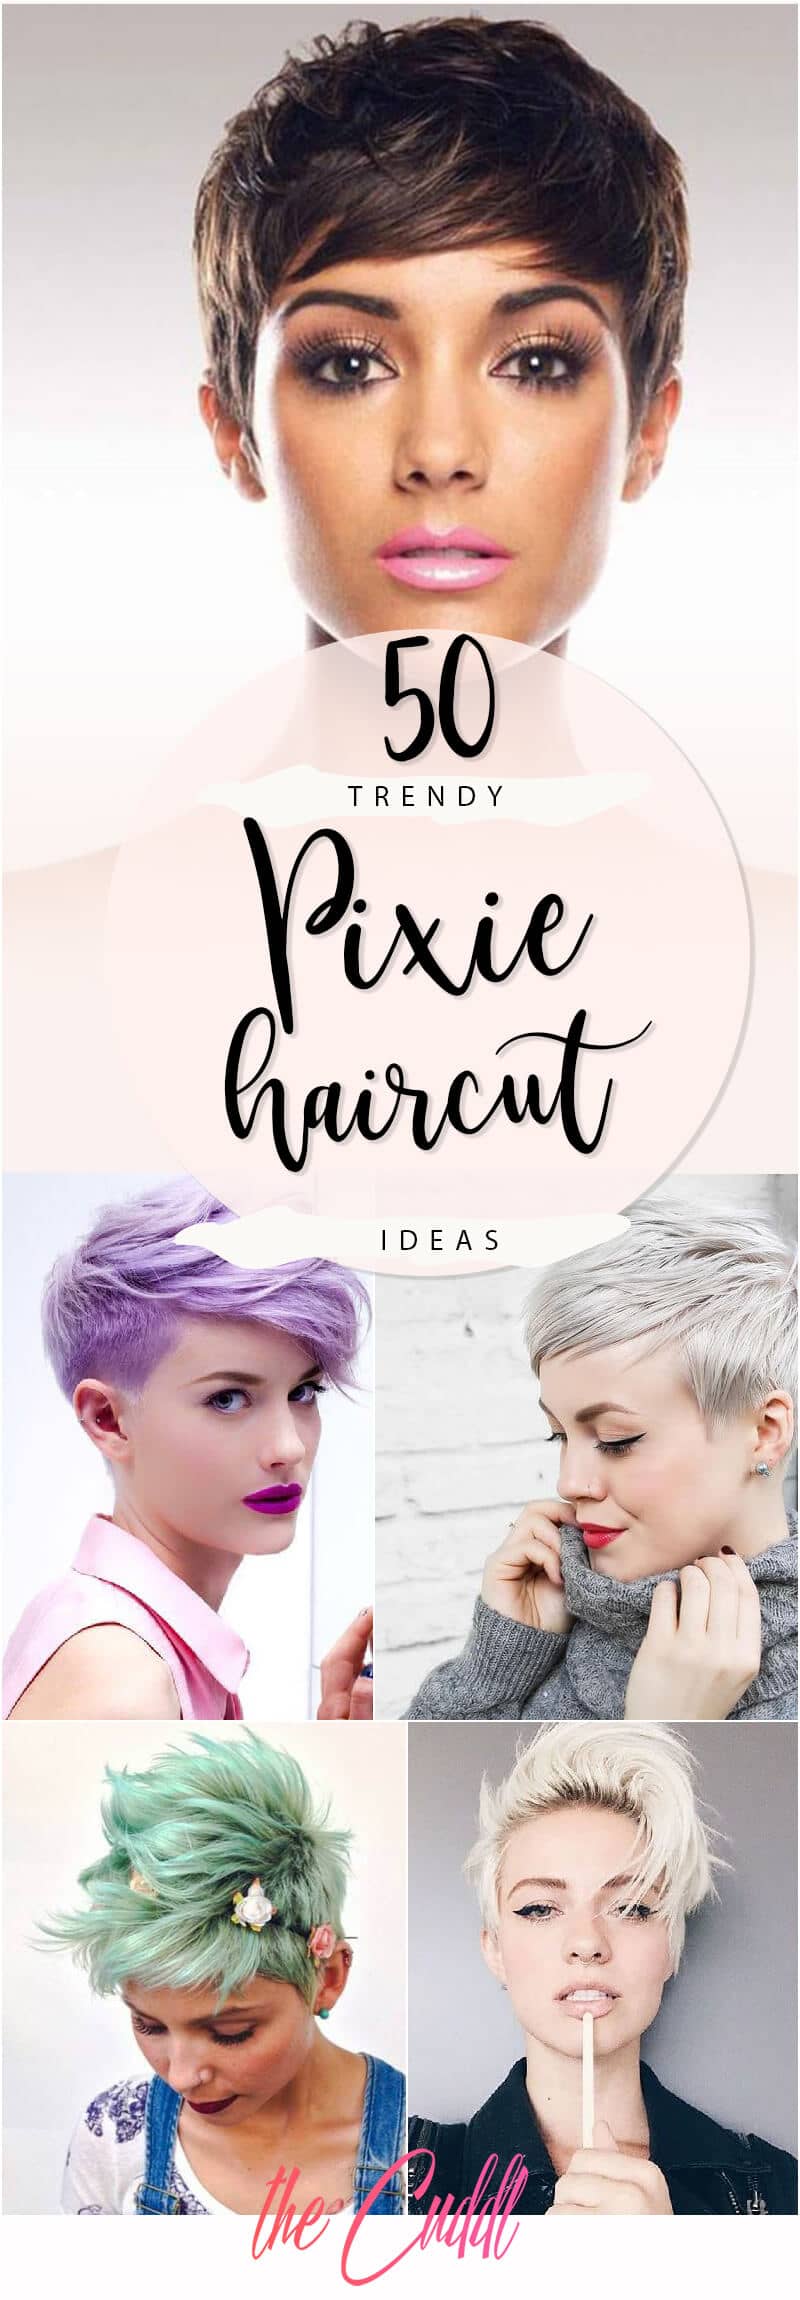 Pixie Cut Ideas